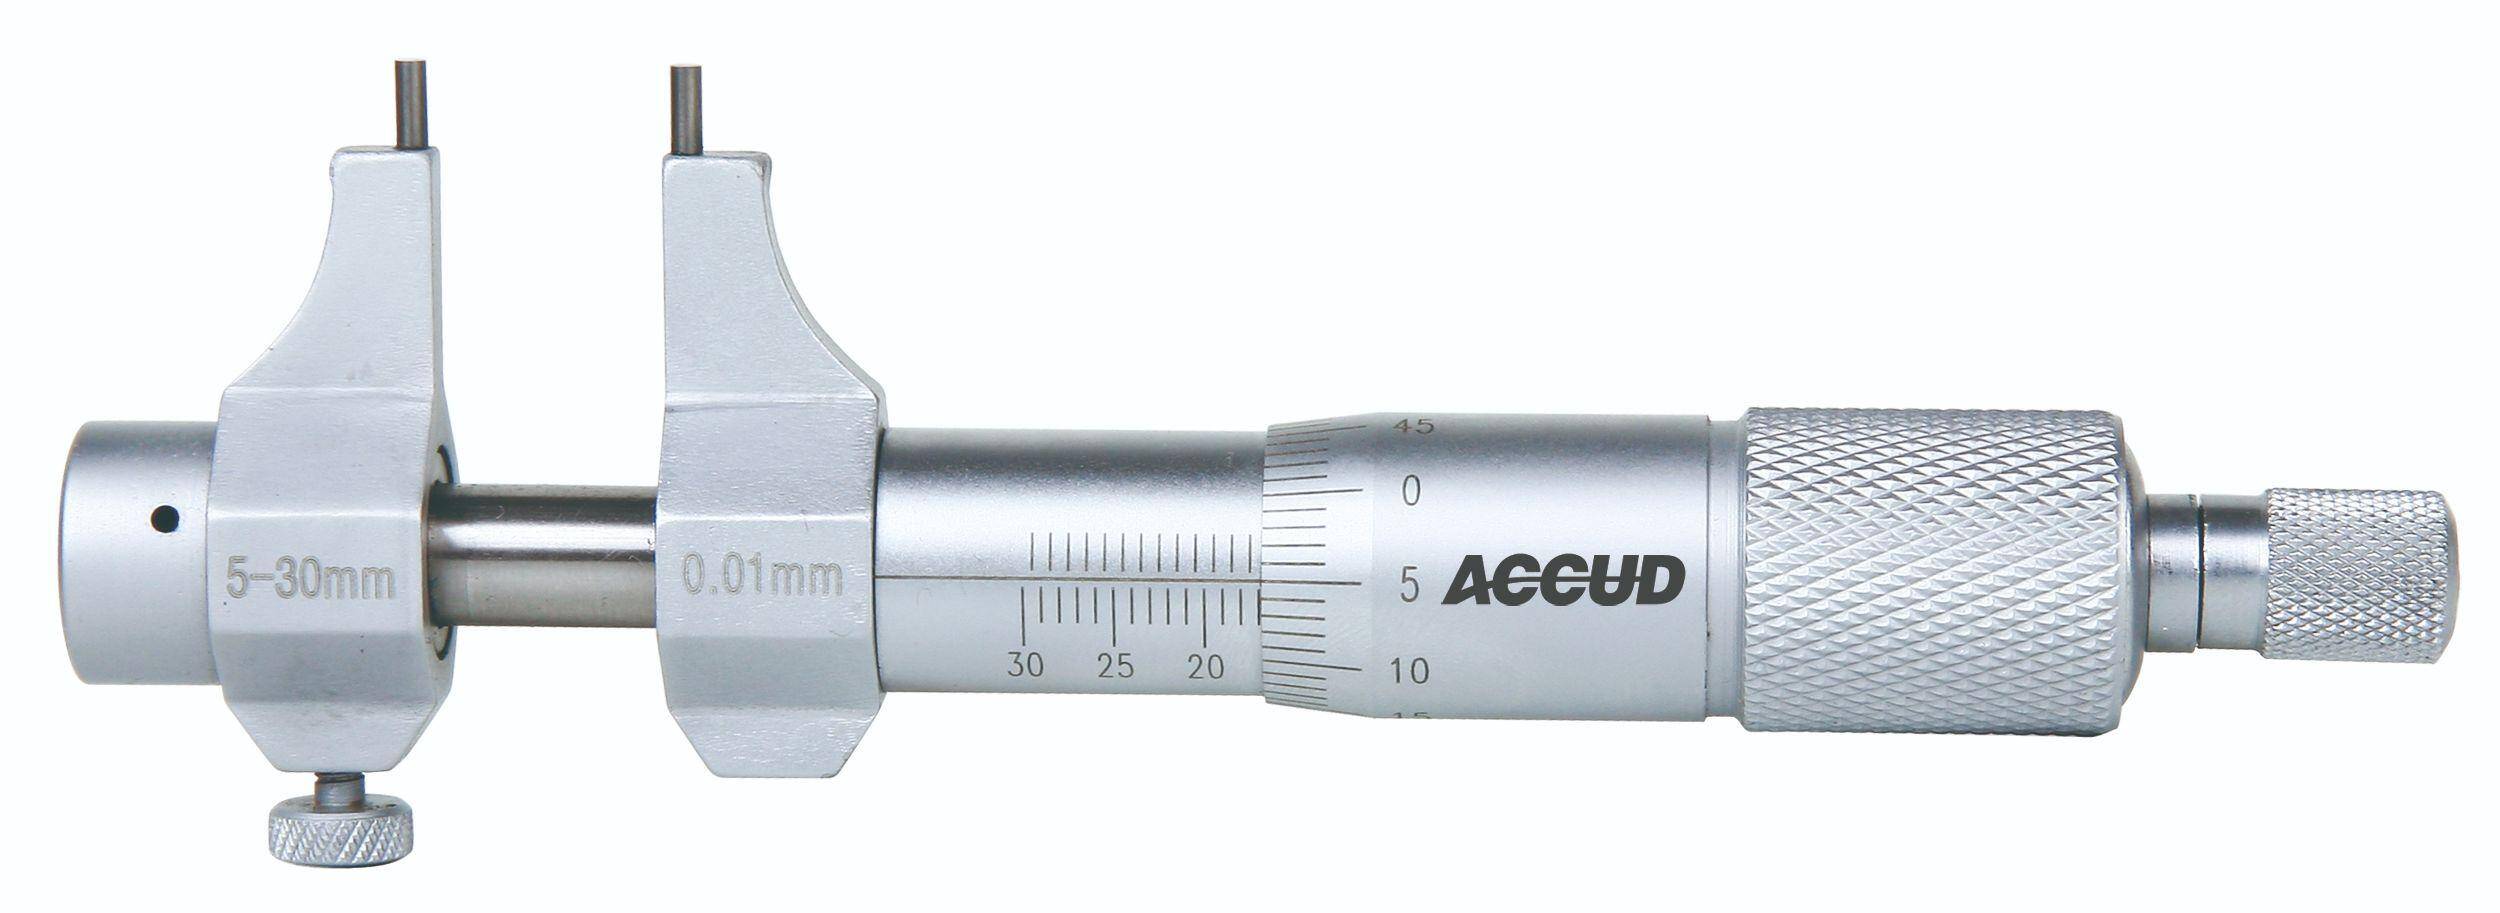 ACCUD mikrometr analogowy 25-50/0.01 mm do pomiarów wewnętrznych + świadectwo wzorcowania 351-002-01 WZORC (Zdjęcie 3)